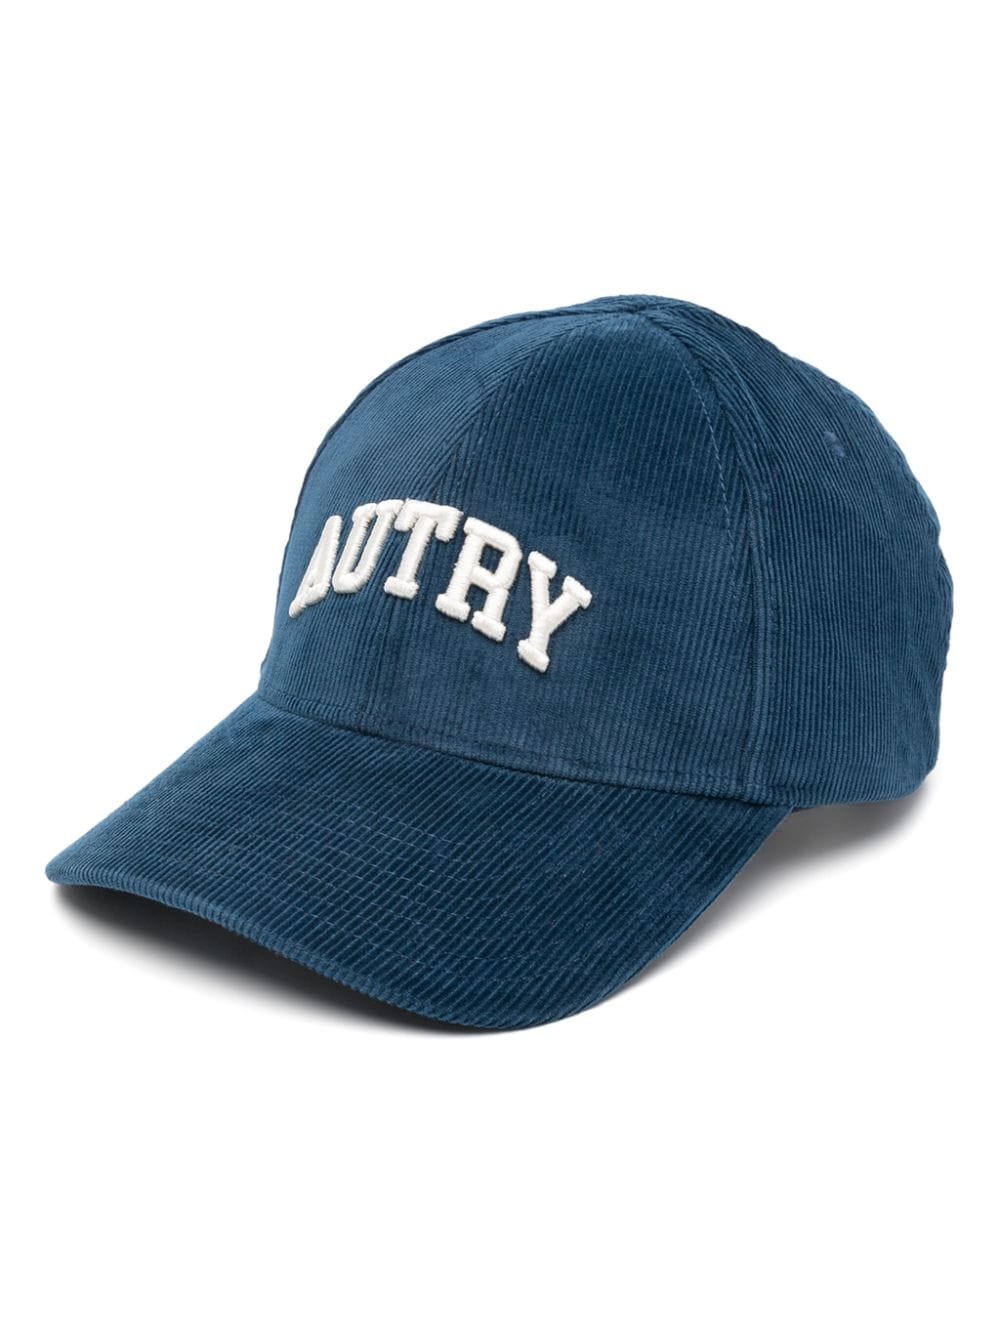 Autry embroidered corduroy baseball cap - Blue von Autry